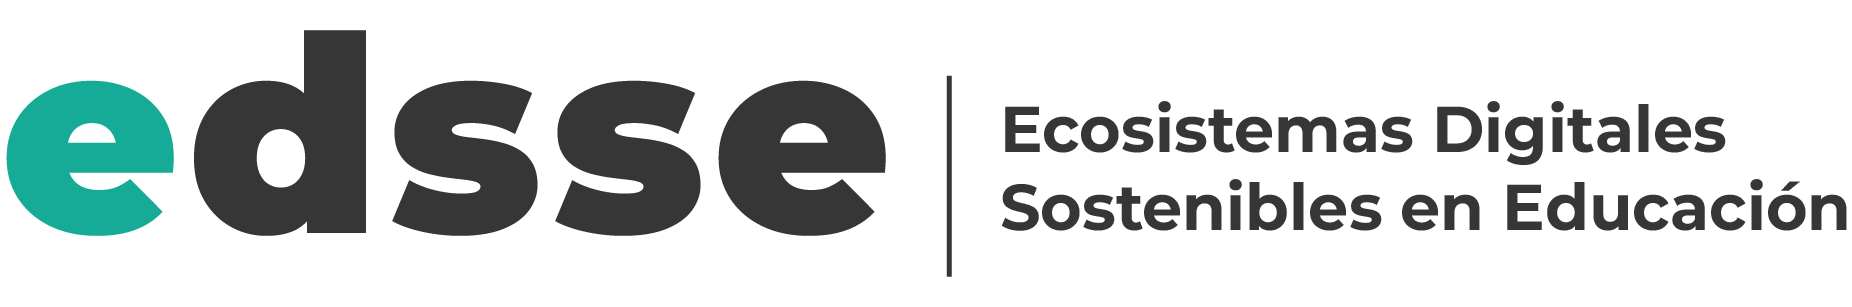 Ecosistemas Digitales Sostenibles en Educación (EDSSE)